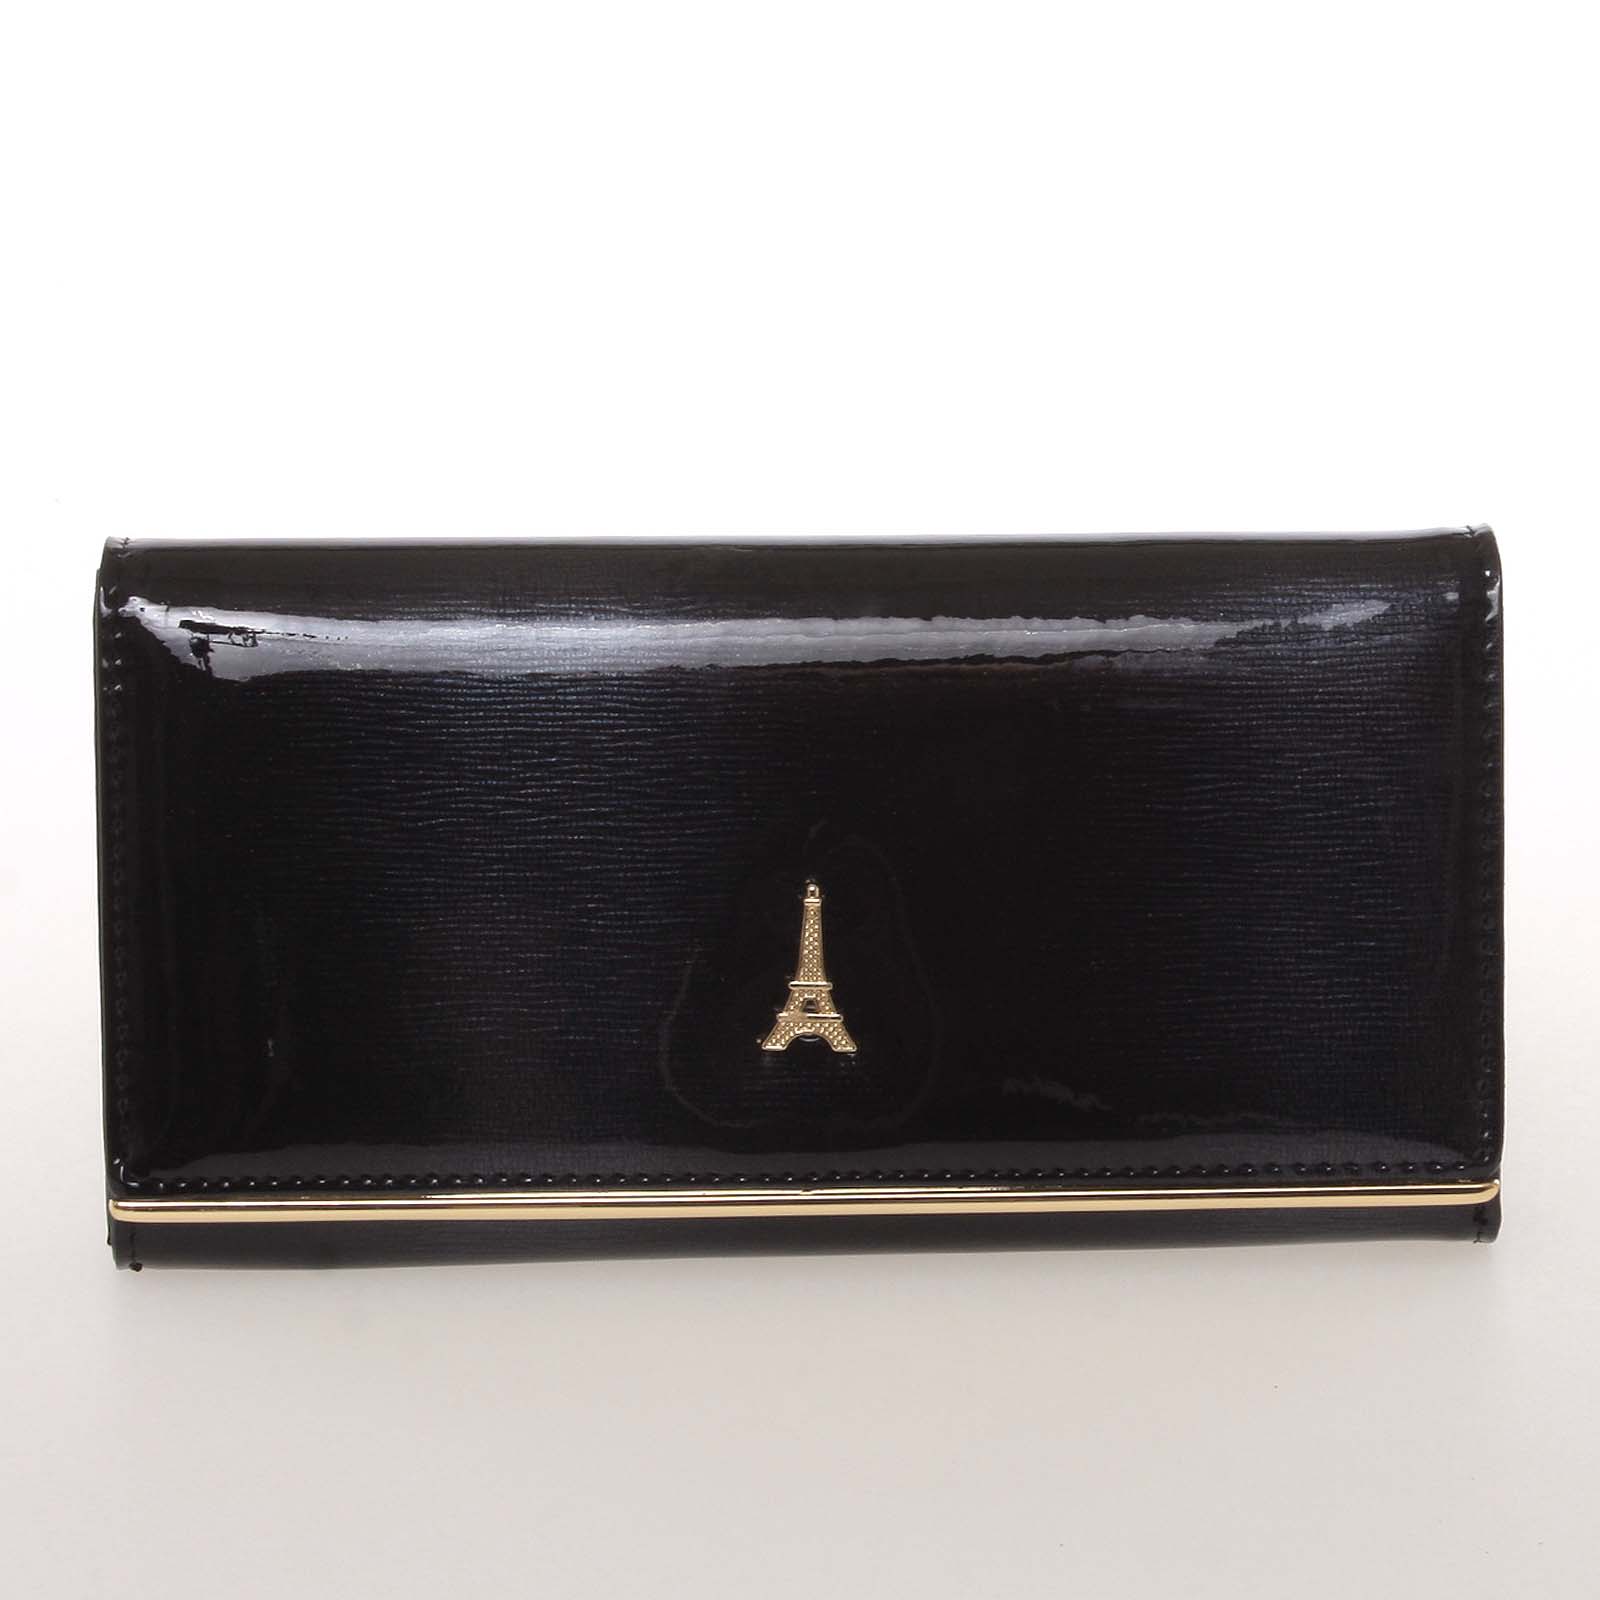 Jedinečná kožená lakovaná dámská peněženka černá - PARIS 64003DSHK černá